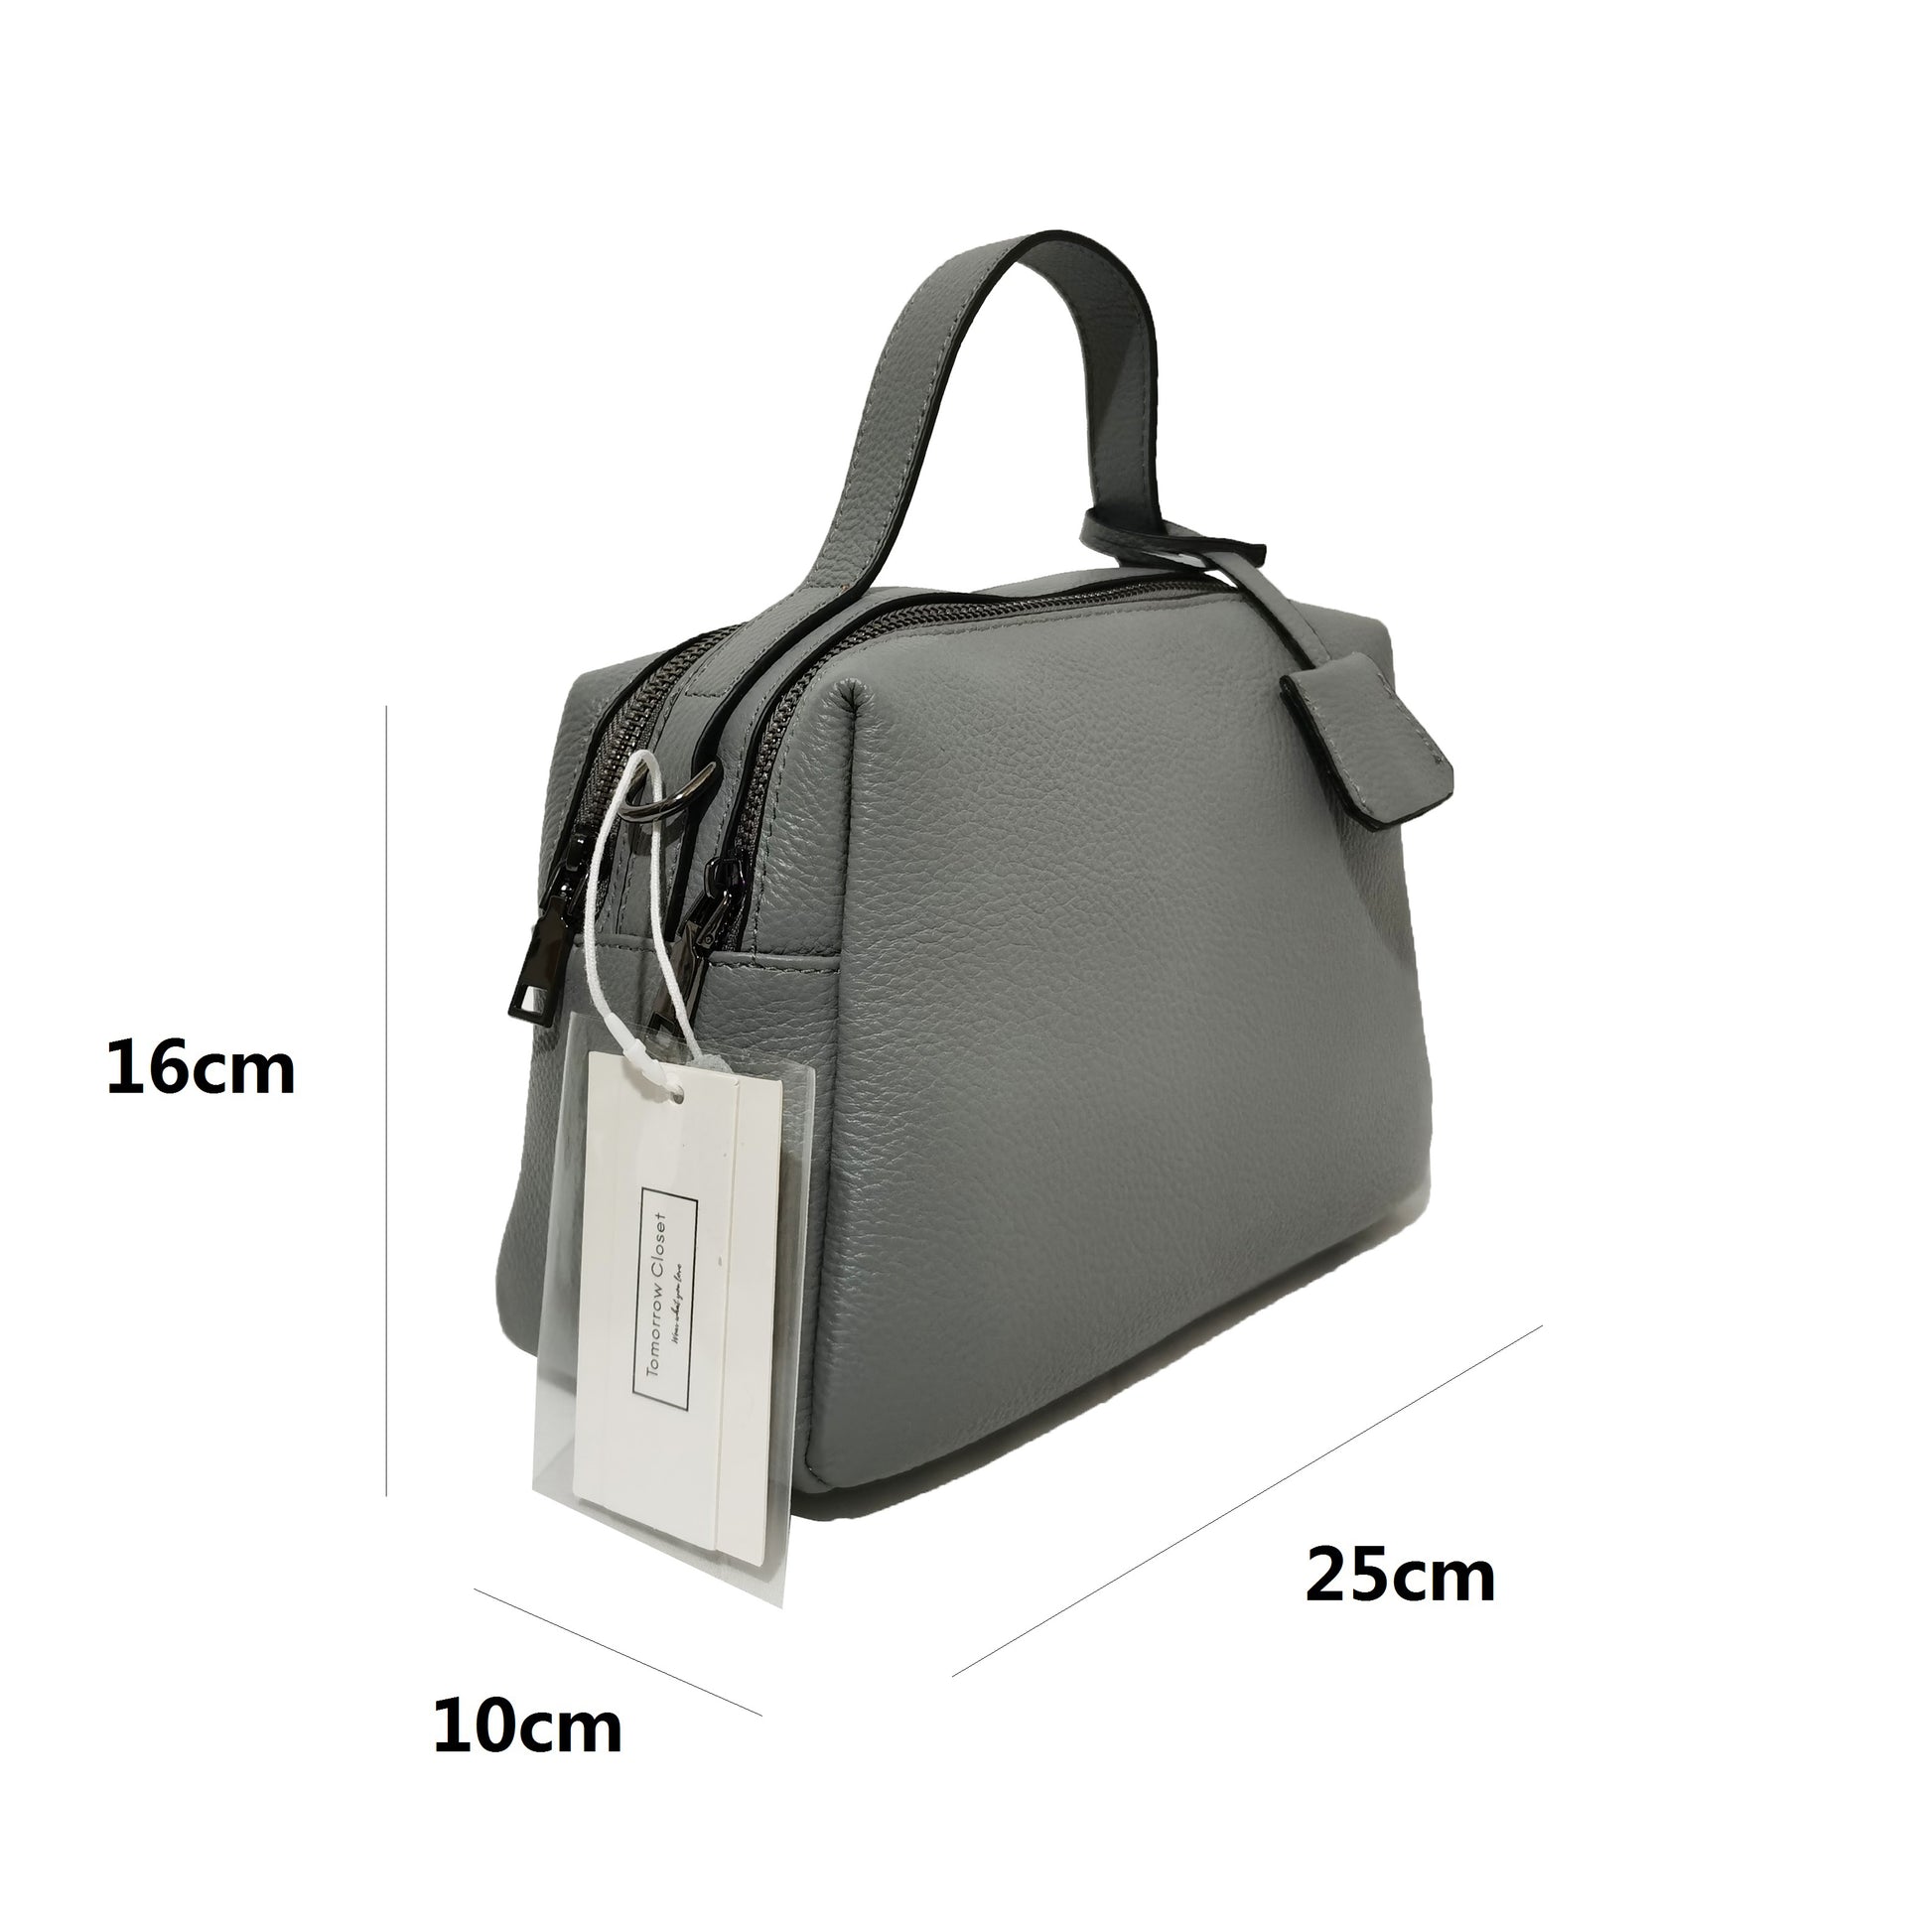 Women's genuine cowhide leather handbag Boling V3 design by Tomorrow Closet